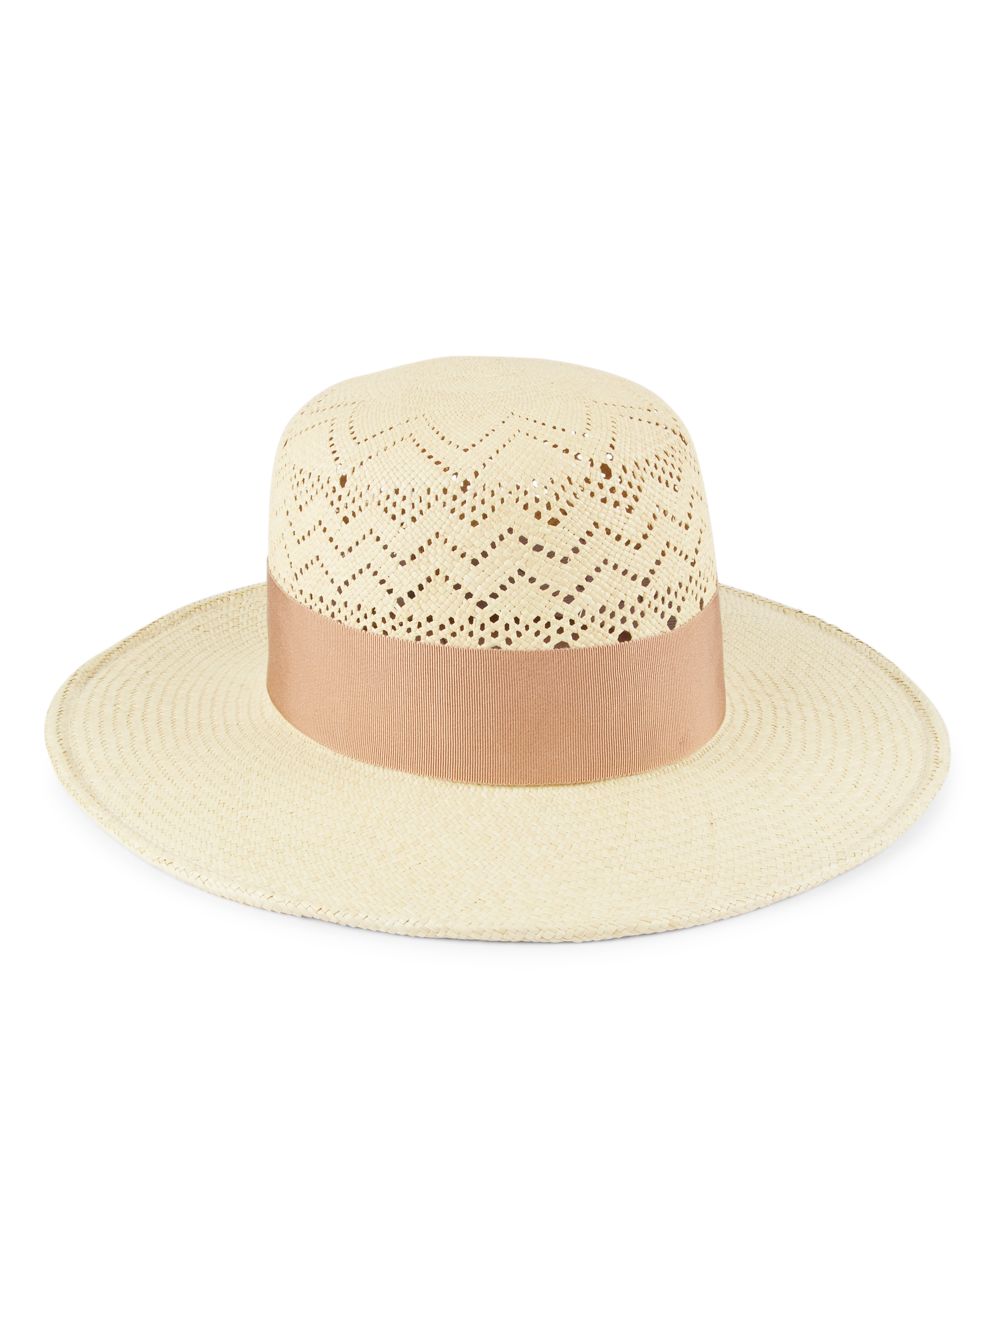 Габриэль крючком соломенная панама шляпа Gigi Burris, песочный